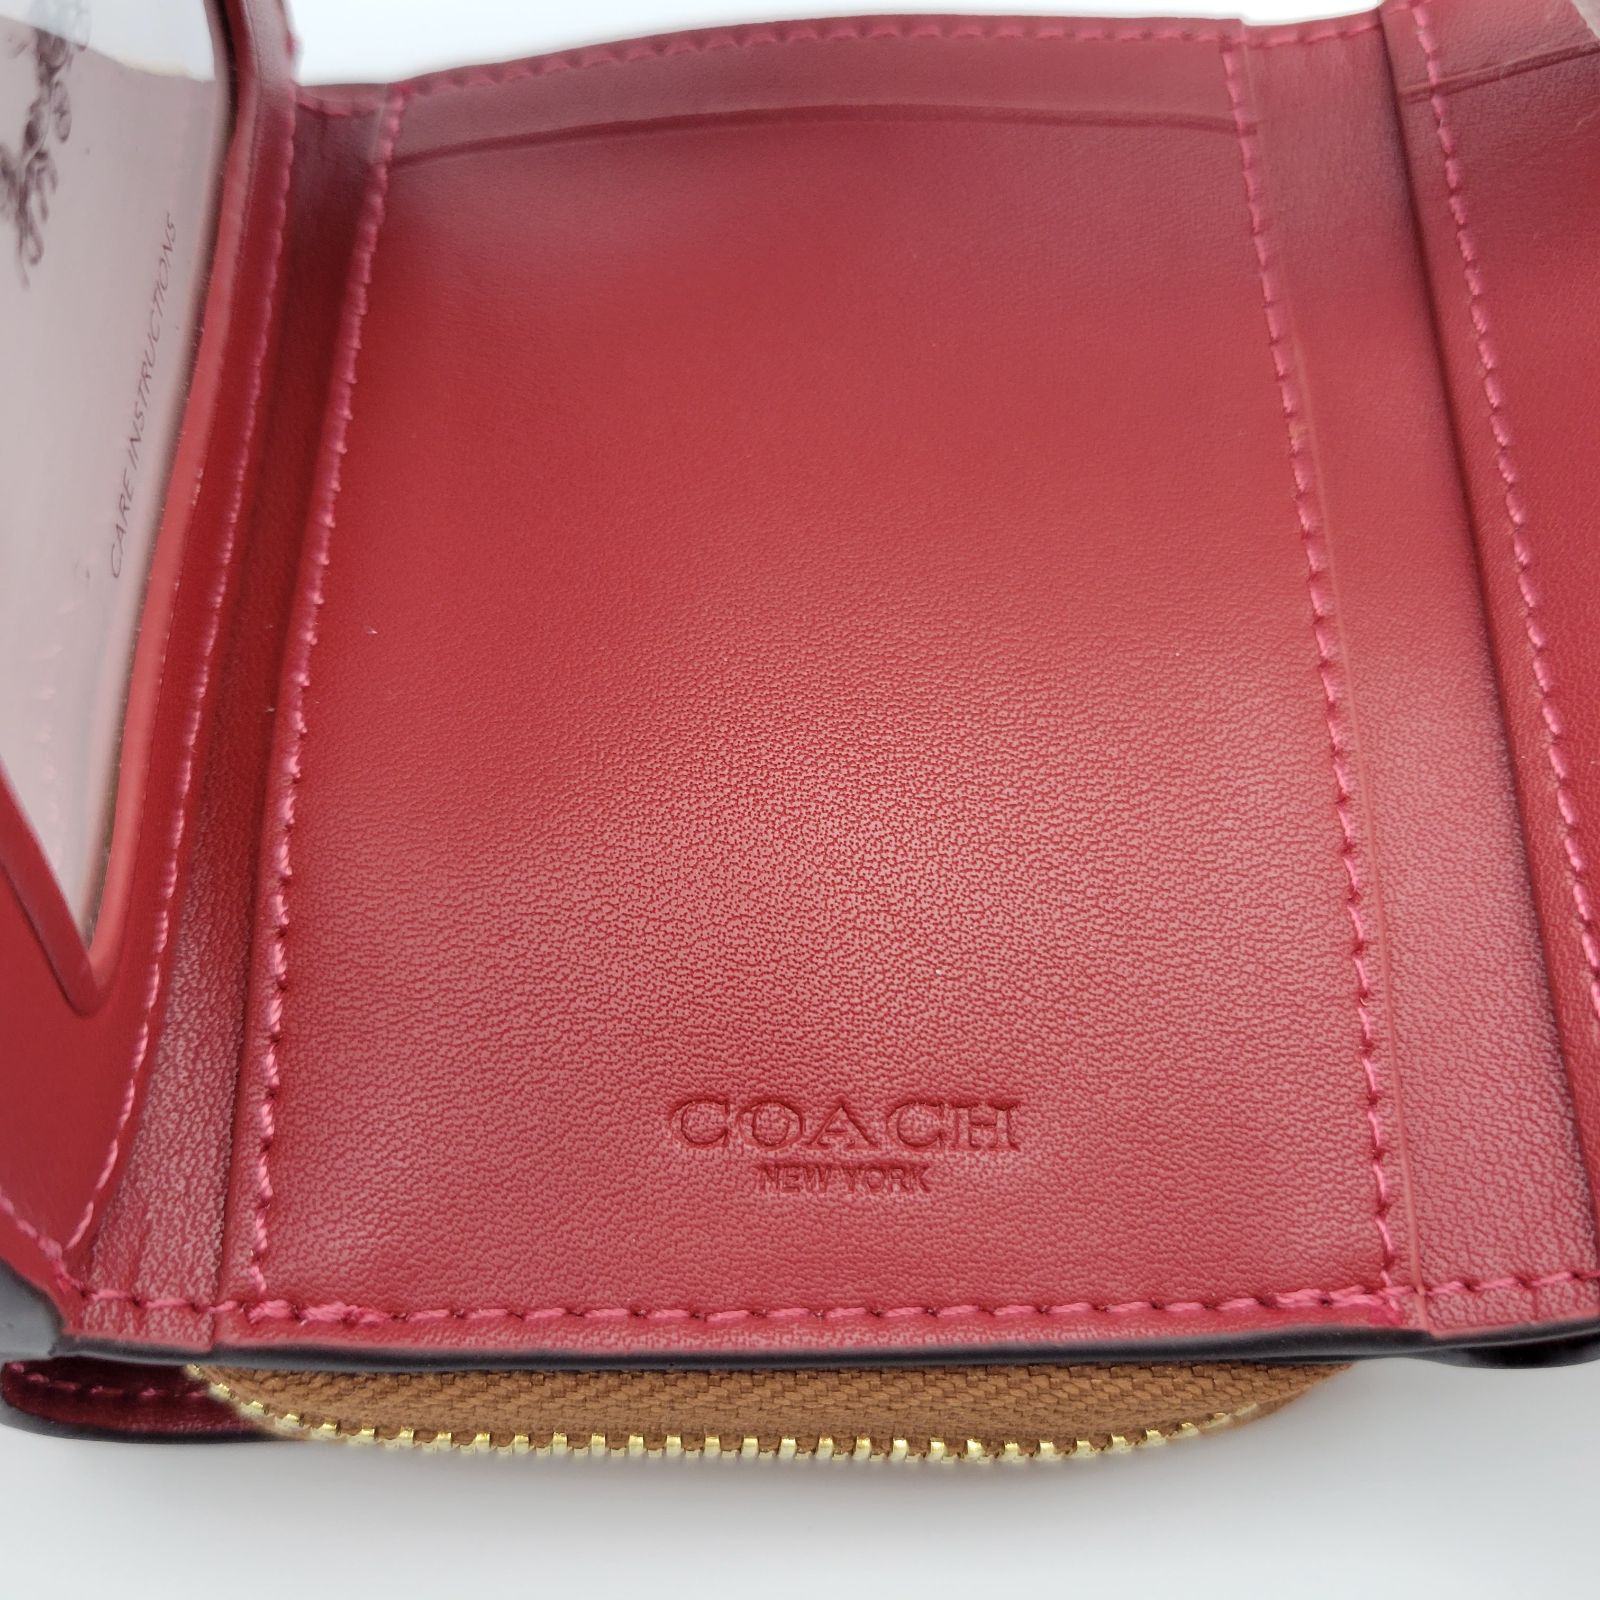 【新品】COACH 三つ折り財布 シグネチャーカーキマルチ フローラル - メルカリShops